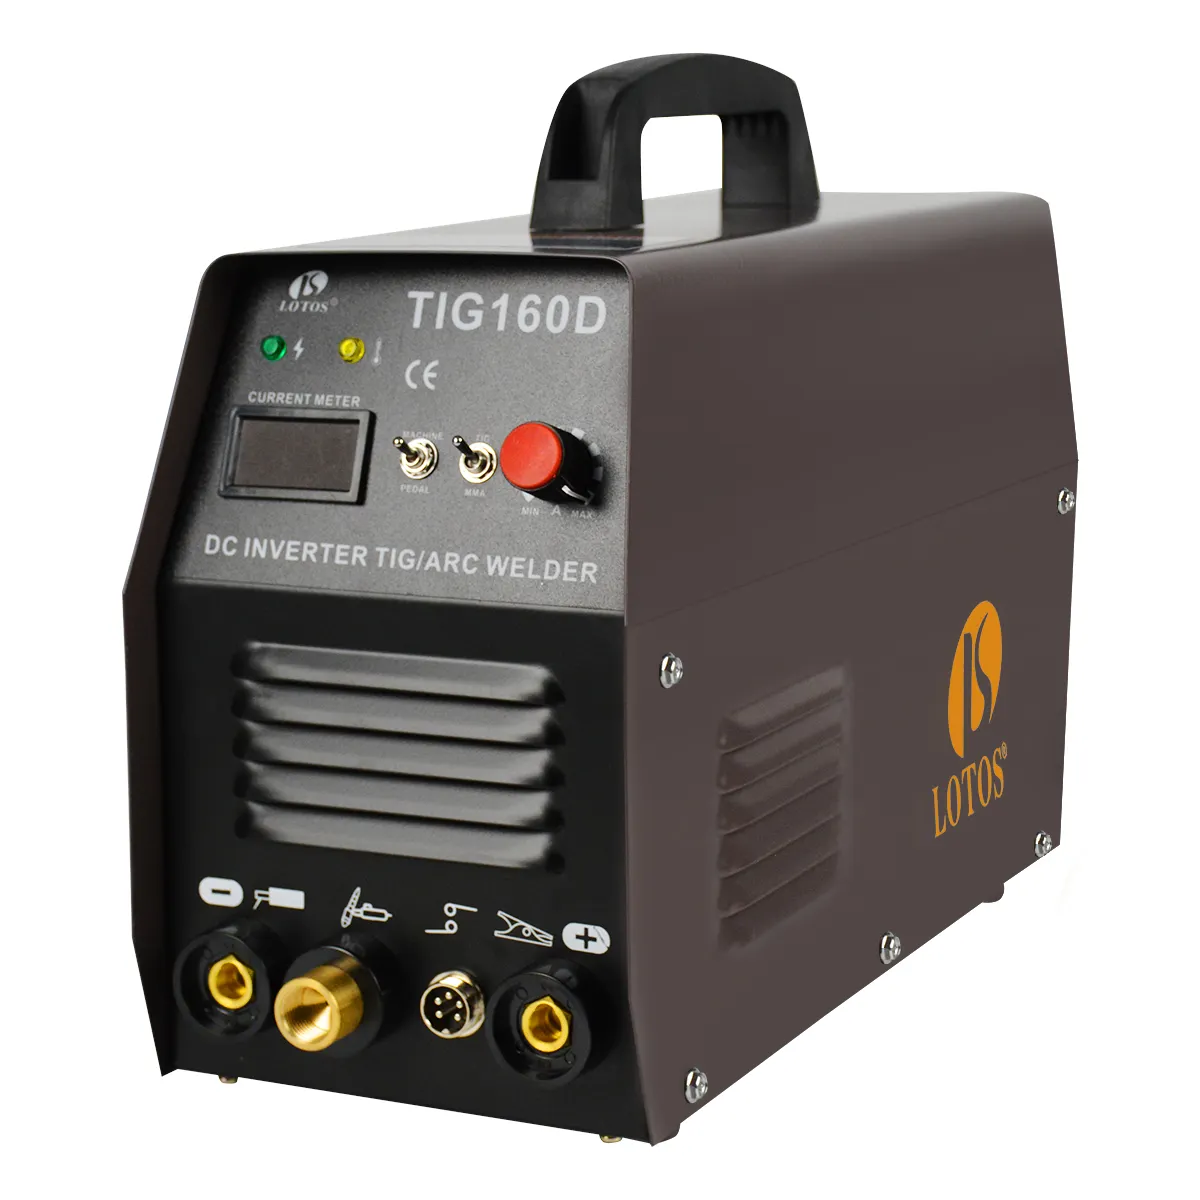 Lotos tig لحام maquina الفقرة soldar IGBT معدات لحام تستخدم الآلات الكهربائية الأخرى معدات لحام